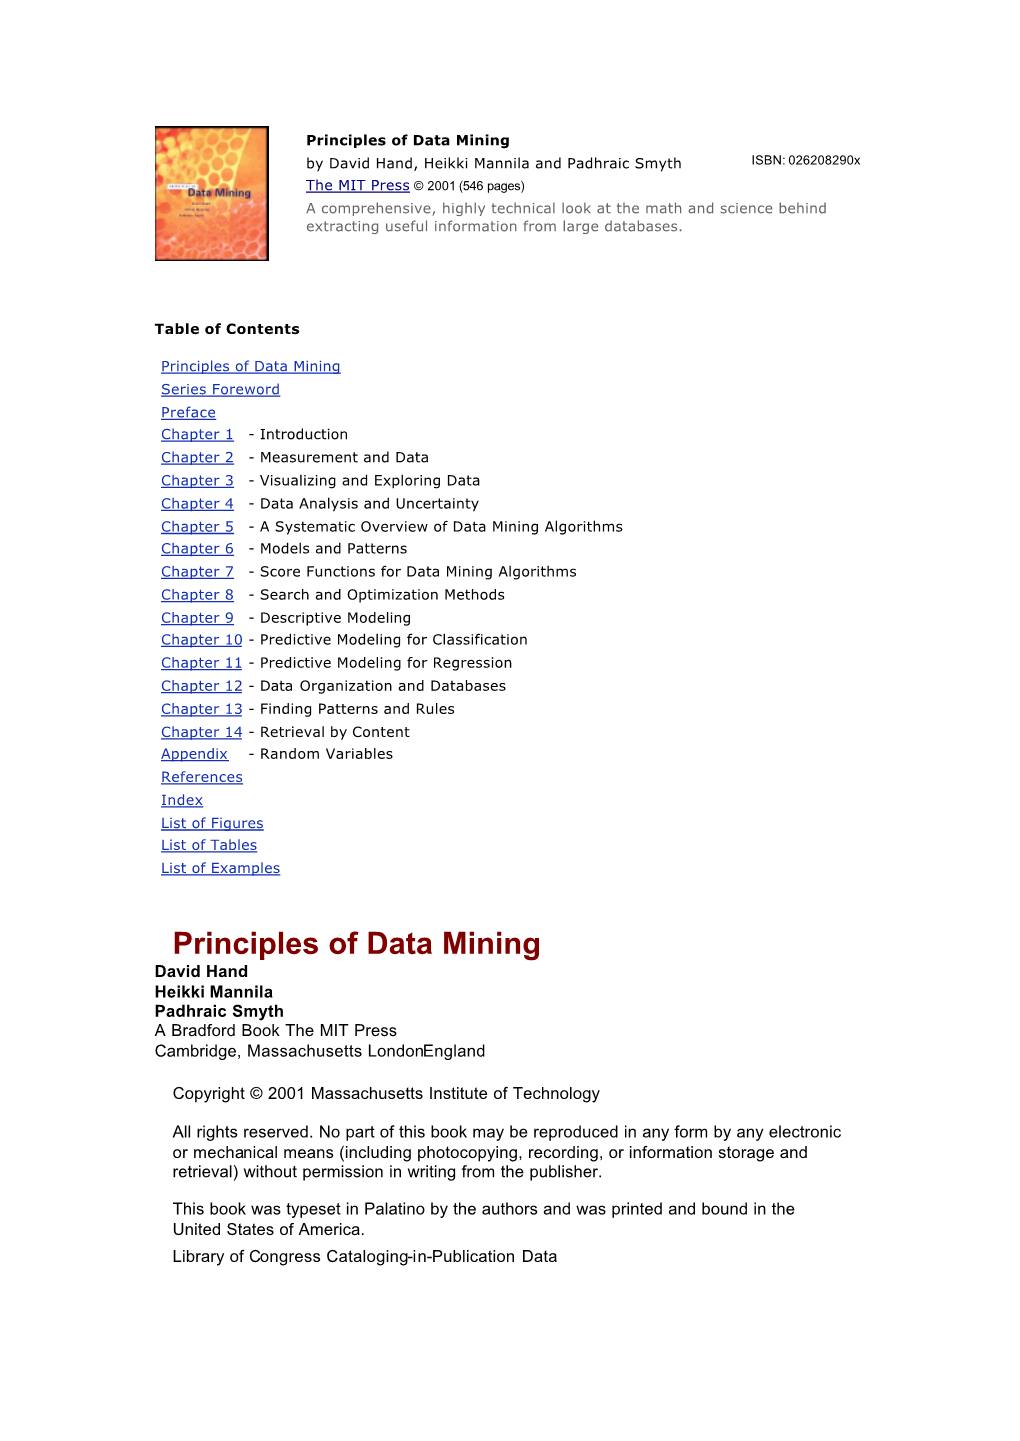 Principles of Data Mining [Hand, Mannila & Smyt